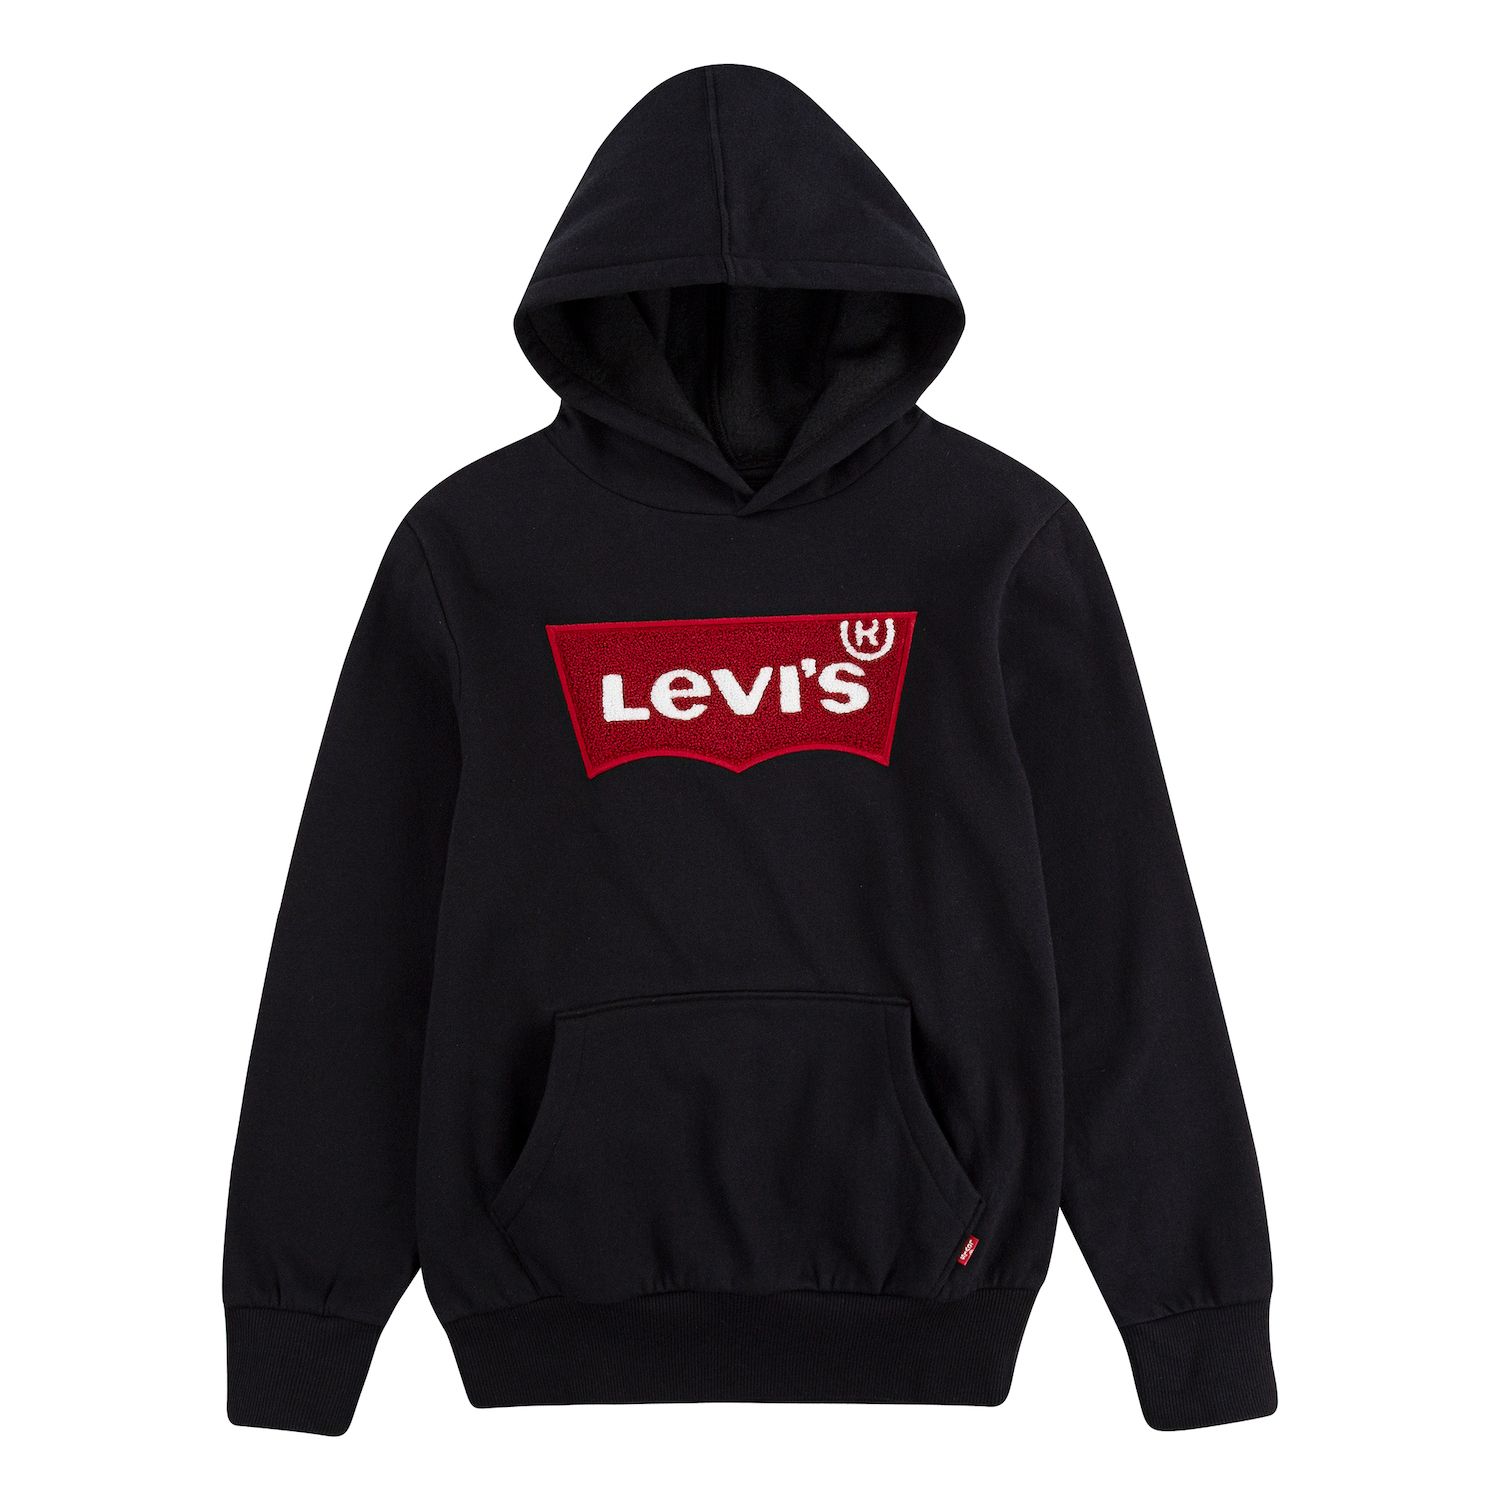 levi's hoodies